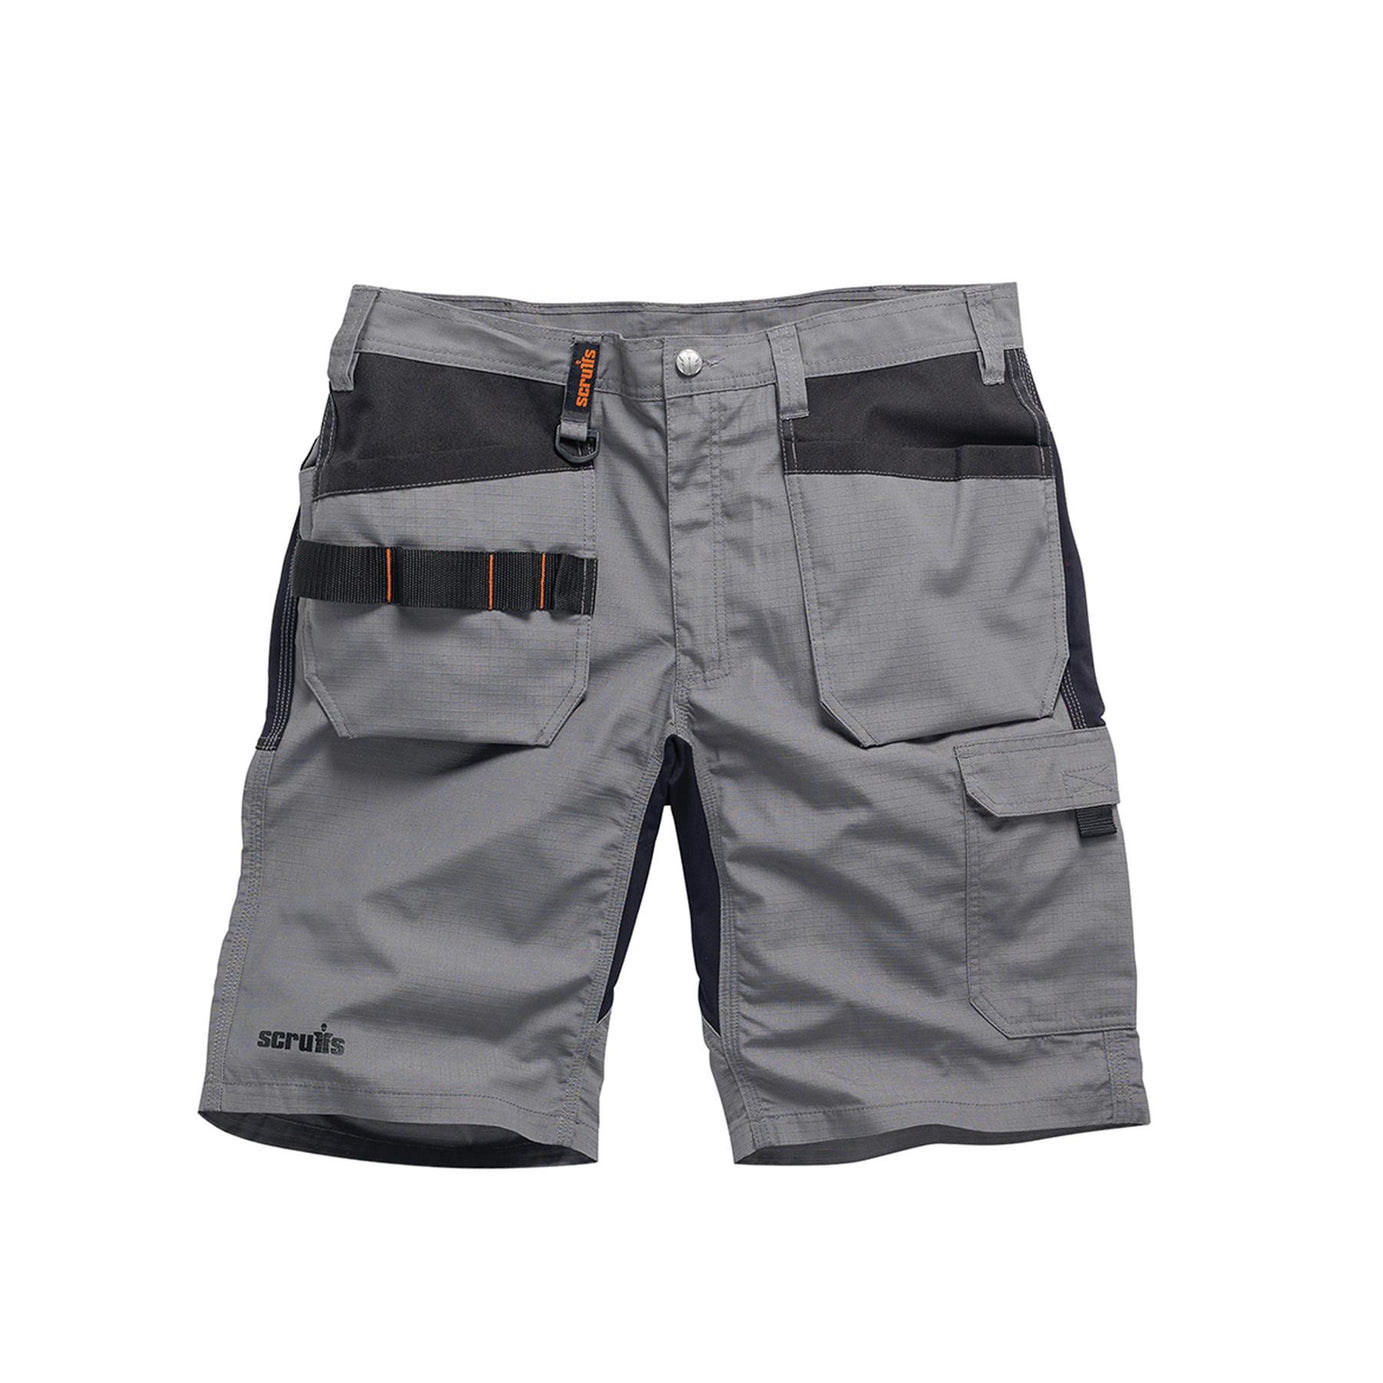 Scruffs Flex Holster Shorts Cargo Combat Pockets Hard Wearing Graphite 34 Waist